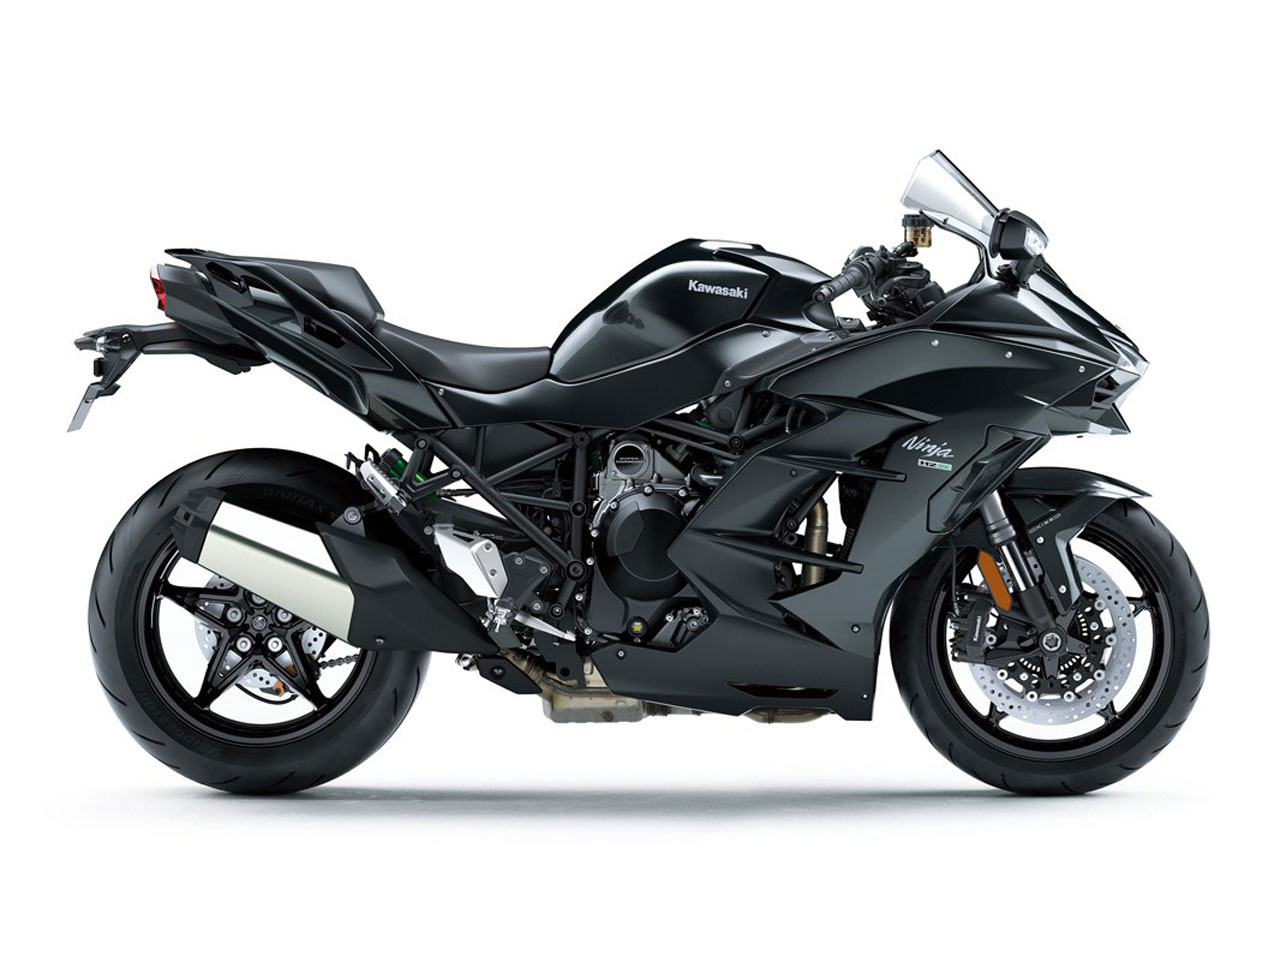 2019 Kawasaki Ninja H2 SX Guide • Total Motorcycle